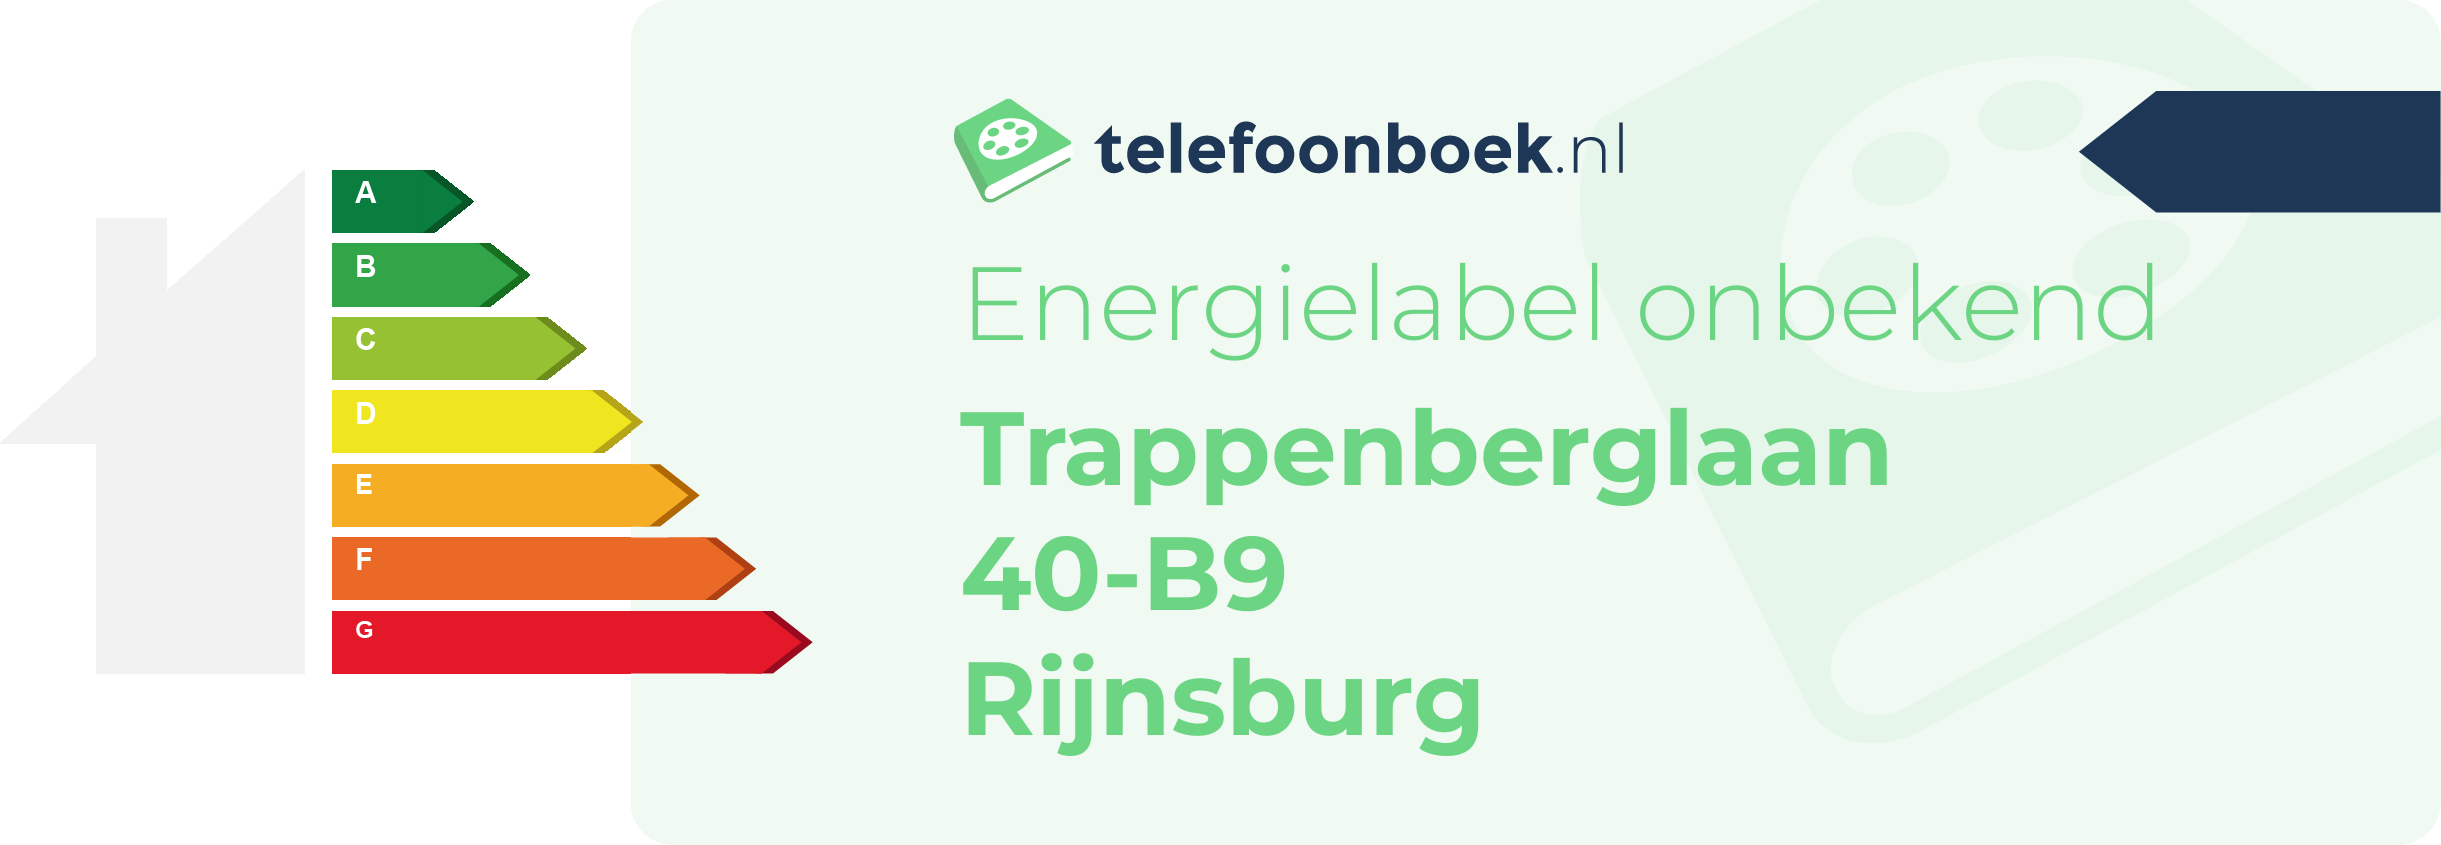 Energielabel Trappenberglaan 40-B9 Rijnsburg